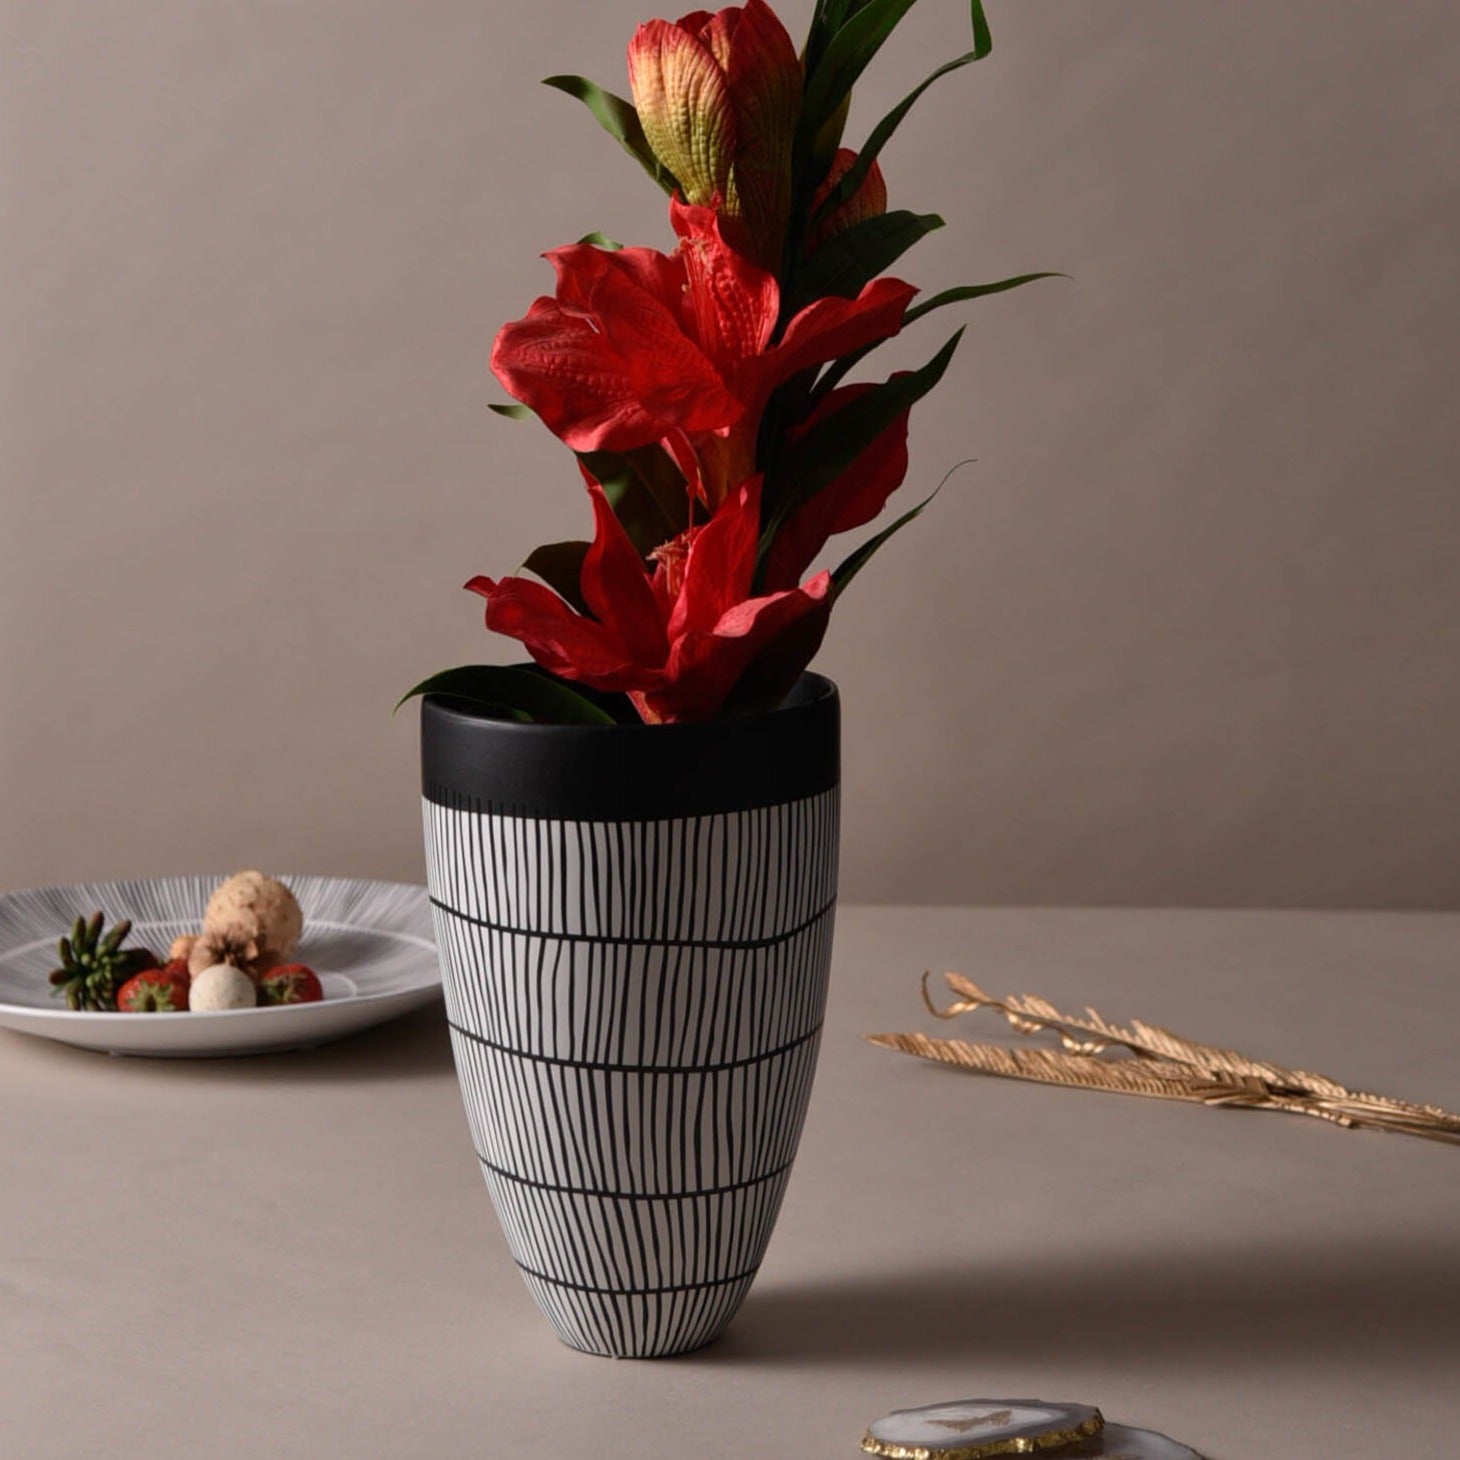 Mangata Black stripes Tall Vase